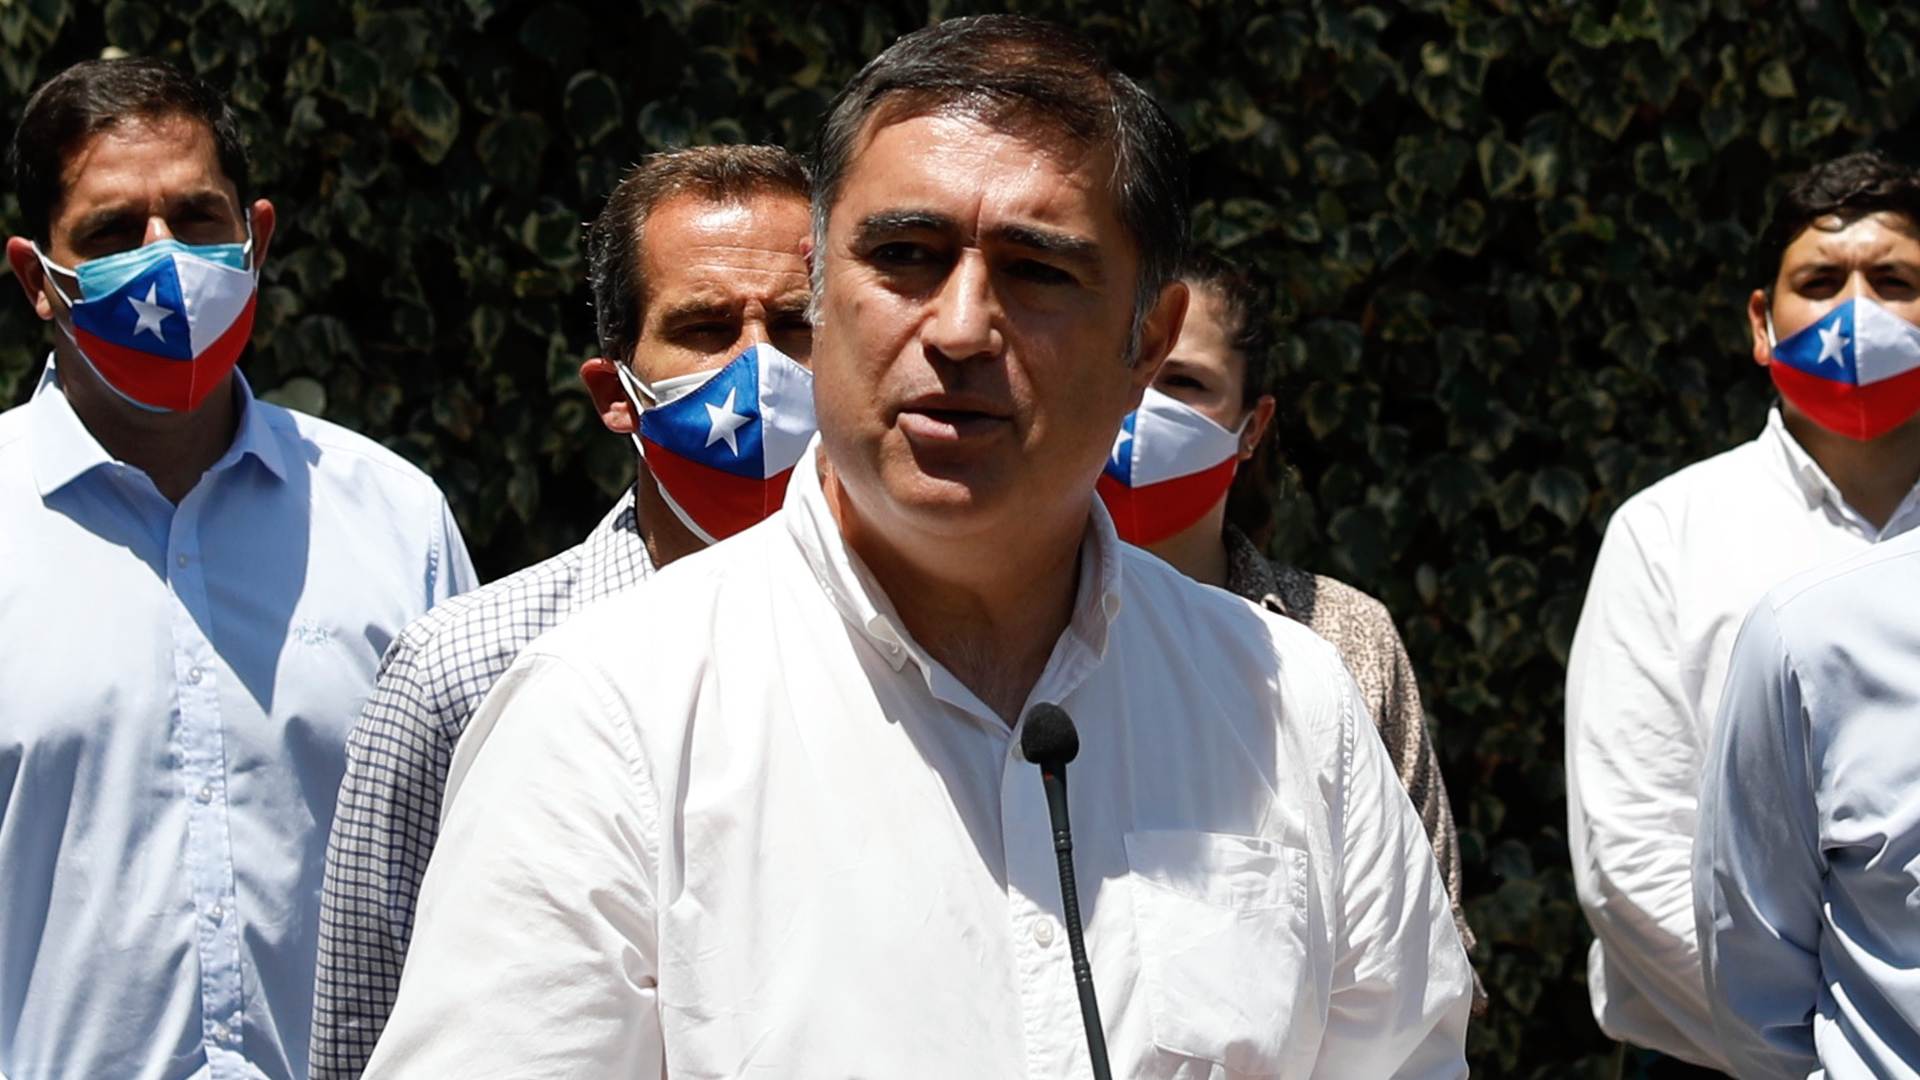 Ciper responde a acusaciones de Desbordes de ser parte de "operación política" para atacar su candidatura